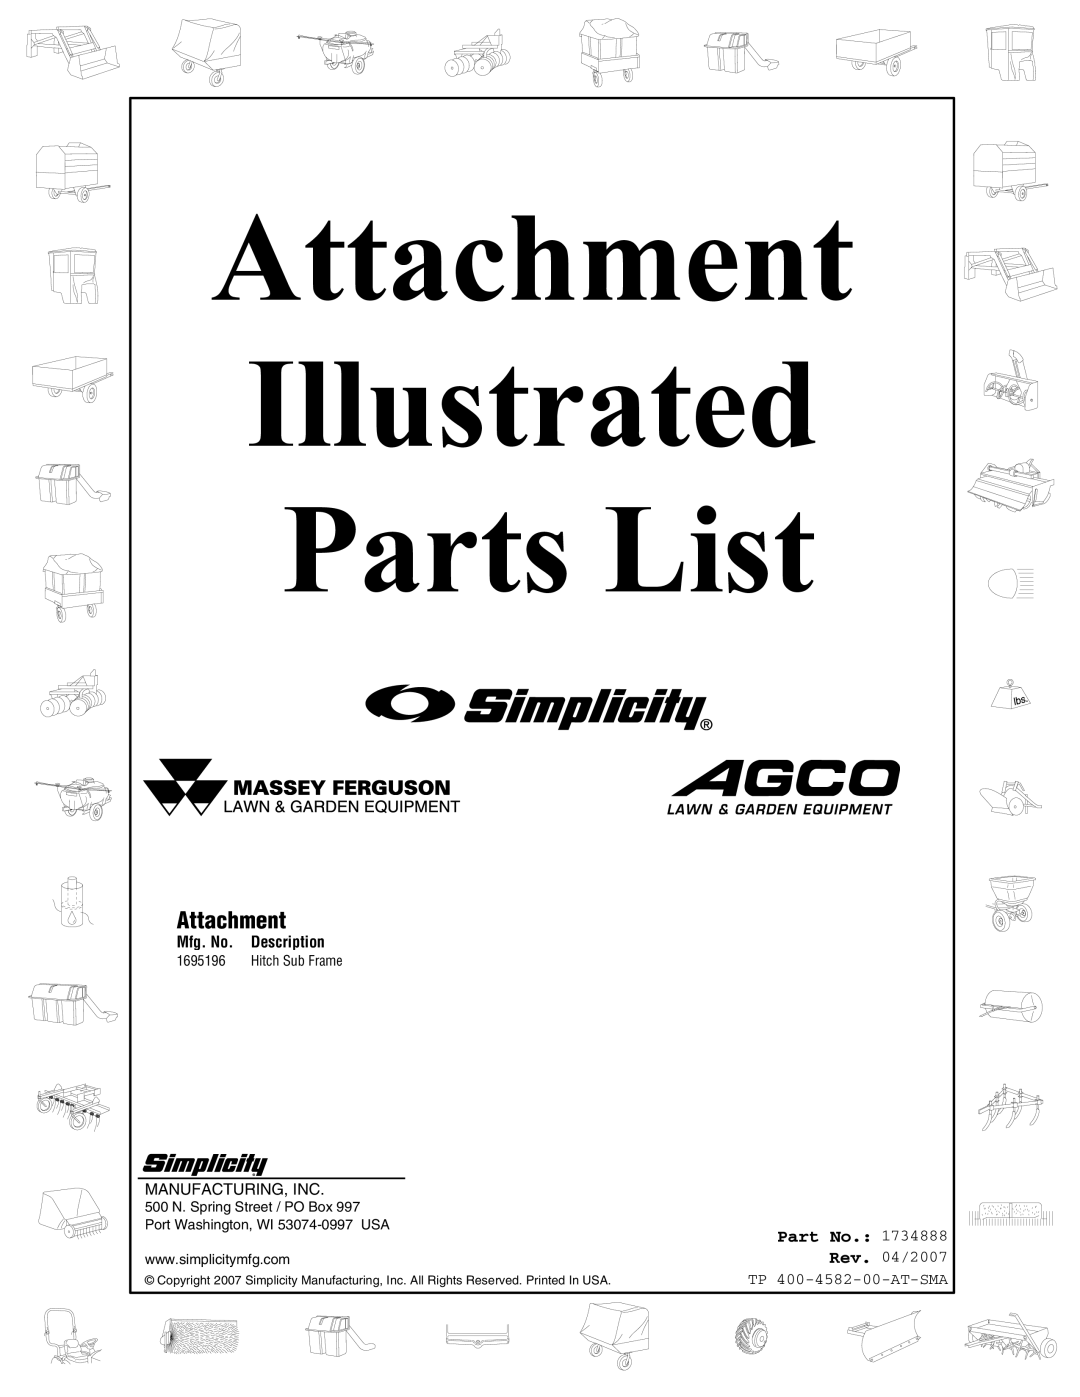 Snapper 4582 manual Attachment, Part No, Mfg. No, Description, Illustrated, Parts List, Rev. 04/2007 